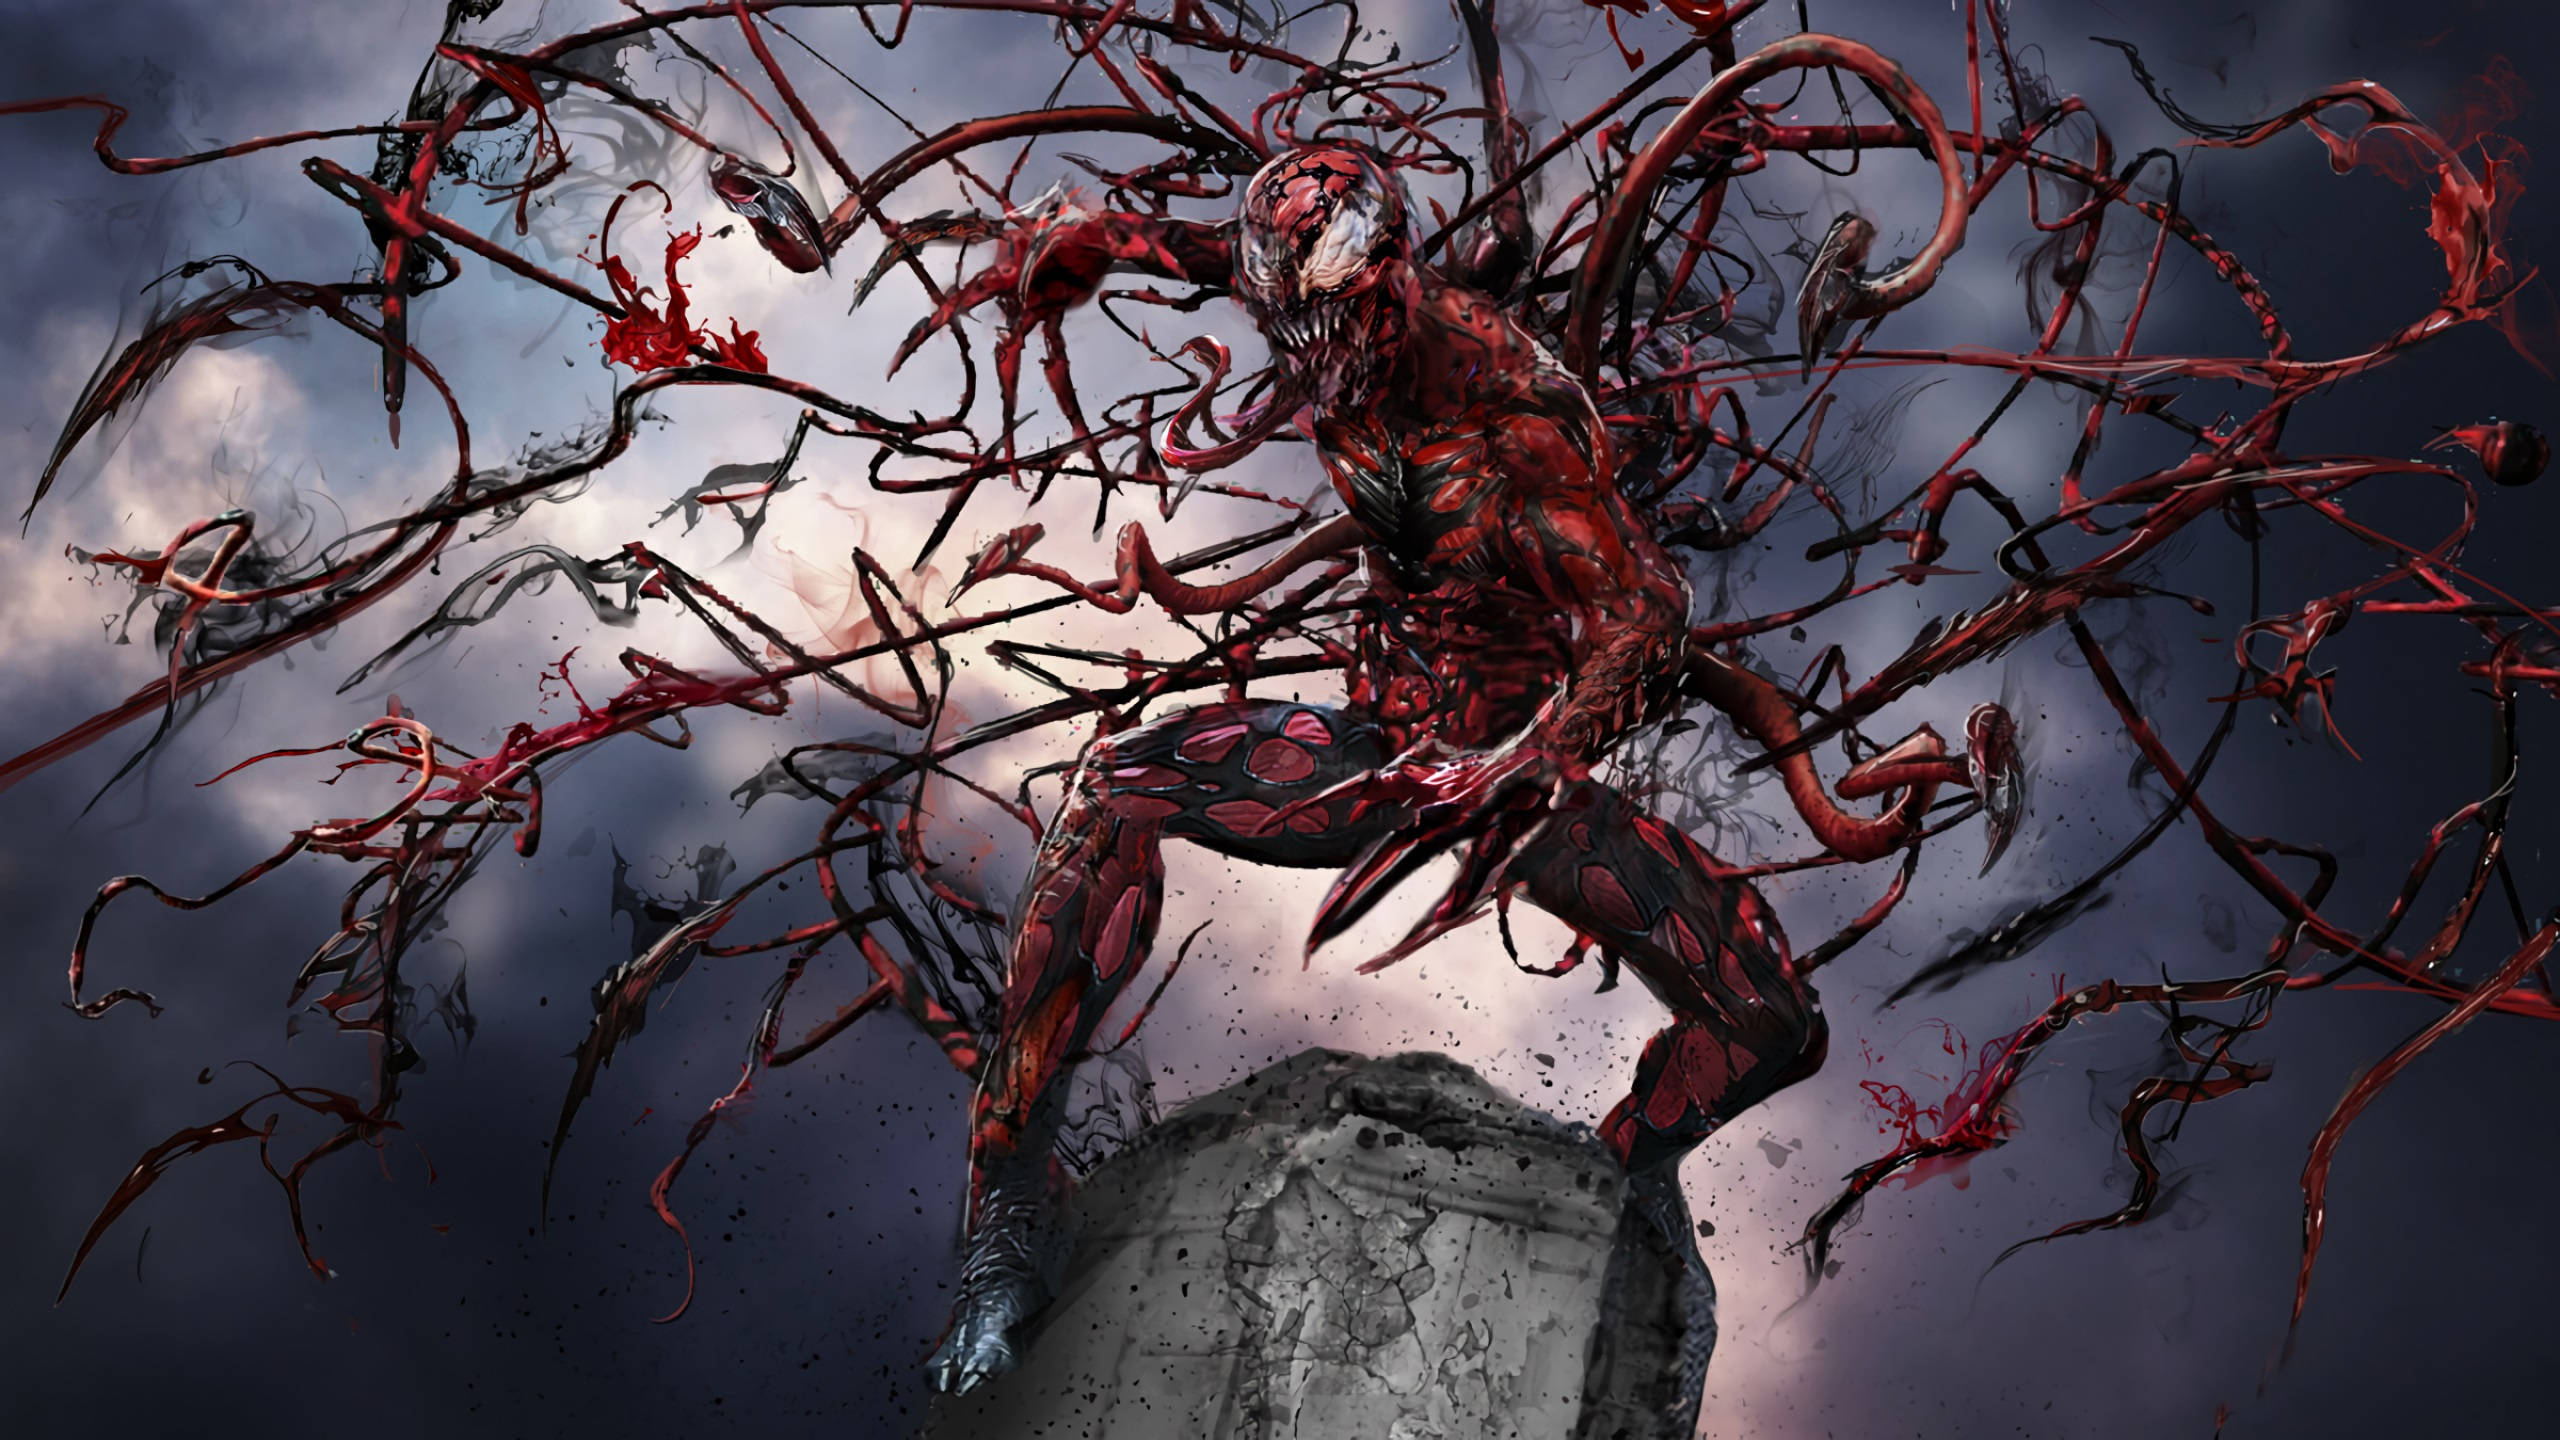 2560x1440 Marvel Carnage Horror Aesthetic